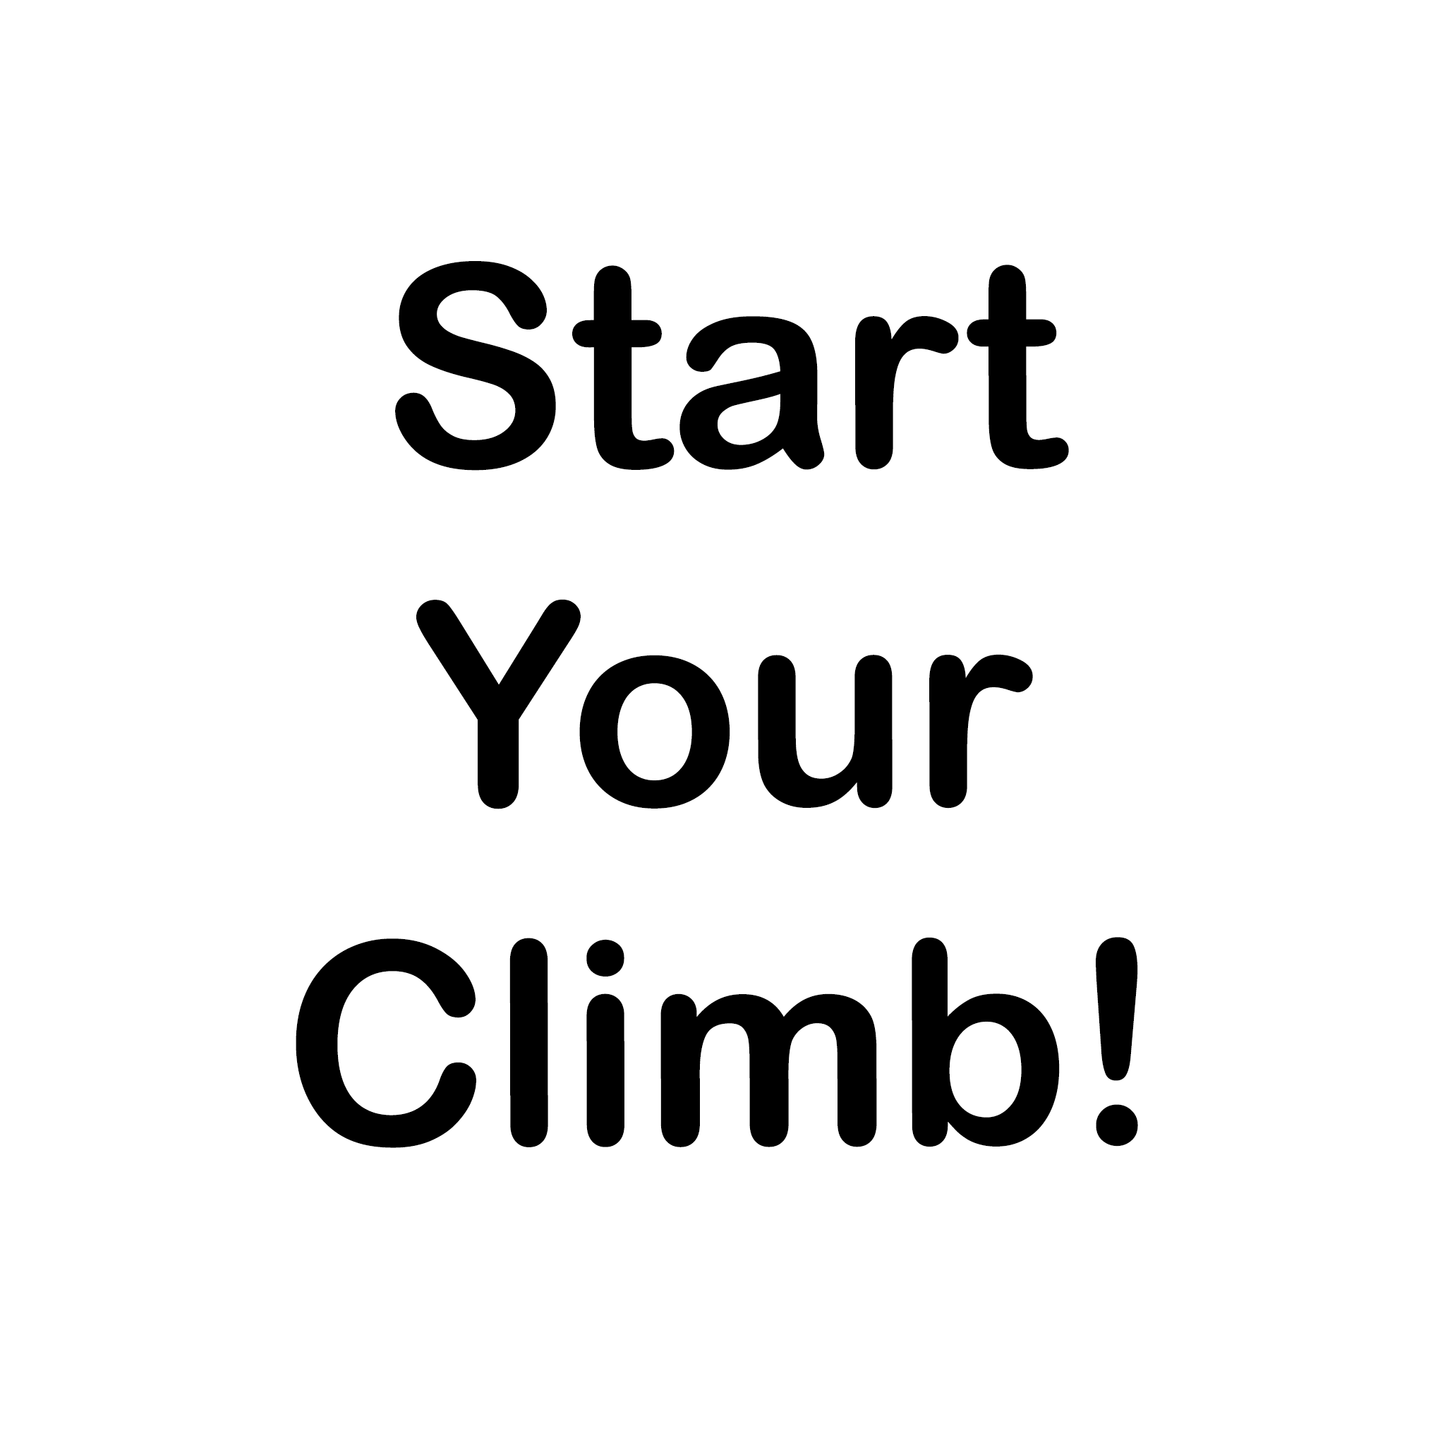 Start Climbing!